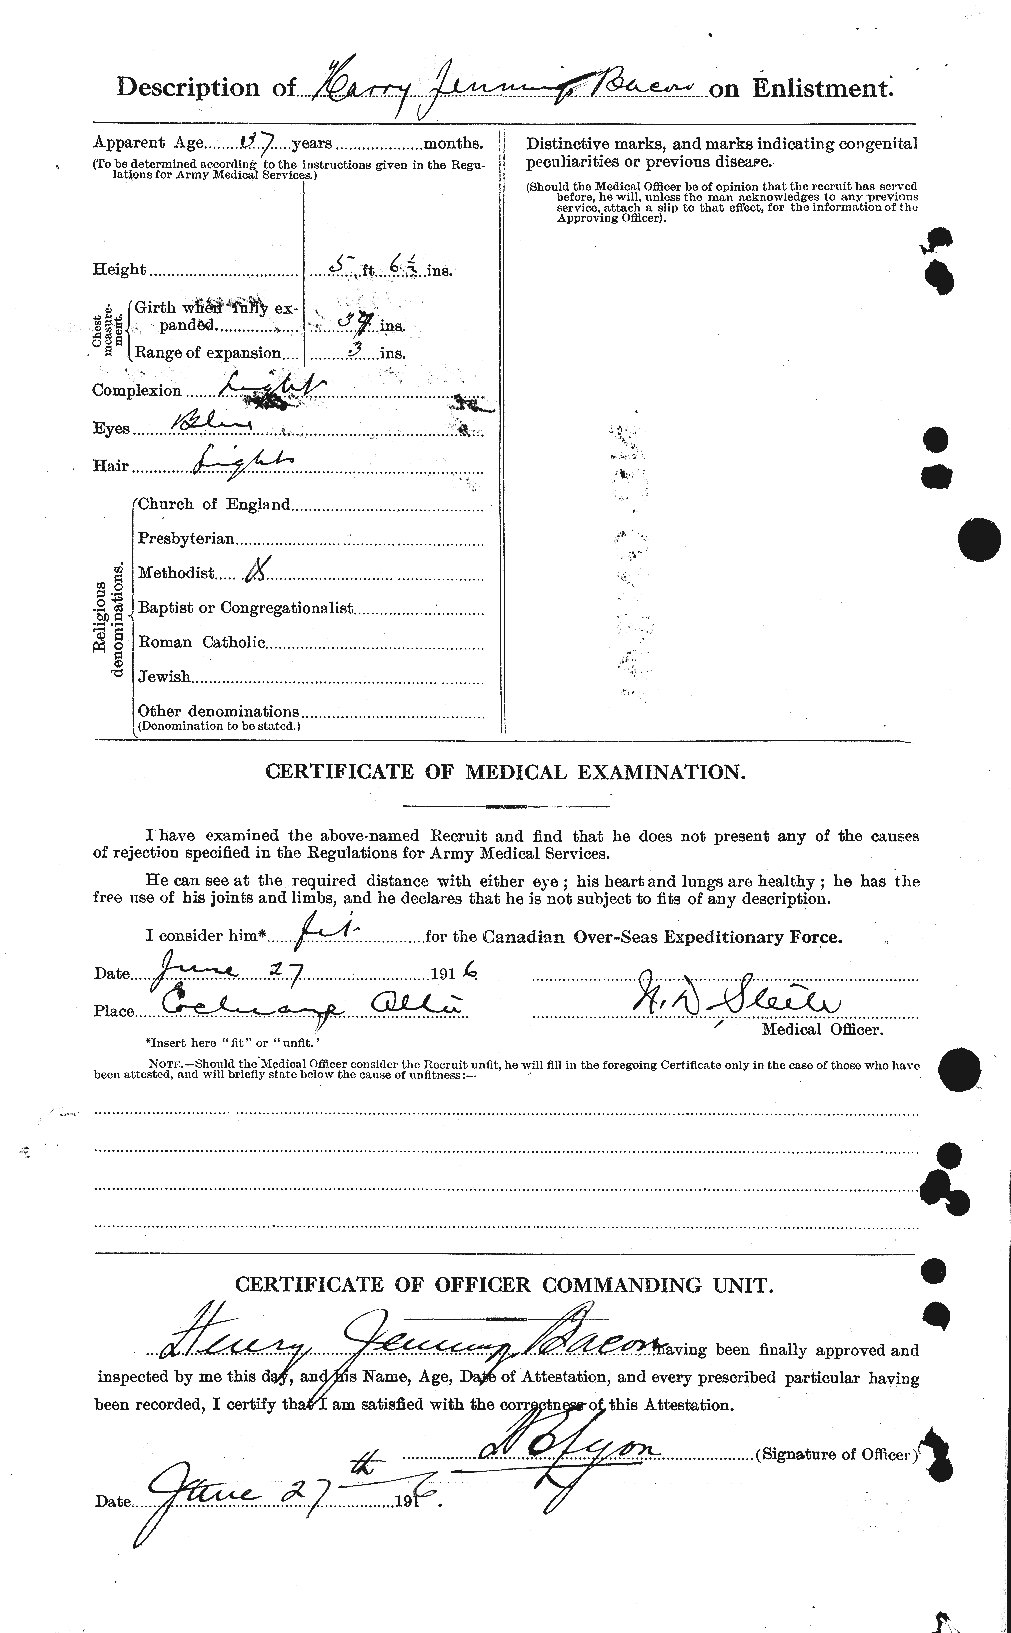 Dossiers du Personnel de la Première Guerre mondiale - CEC 217883b